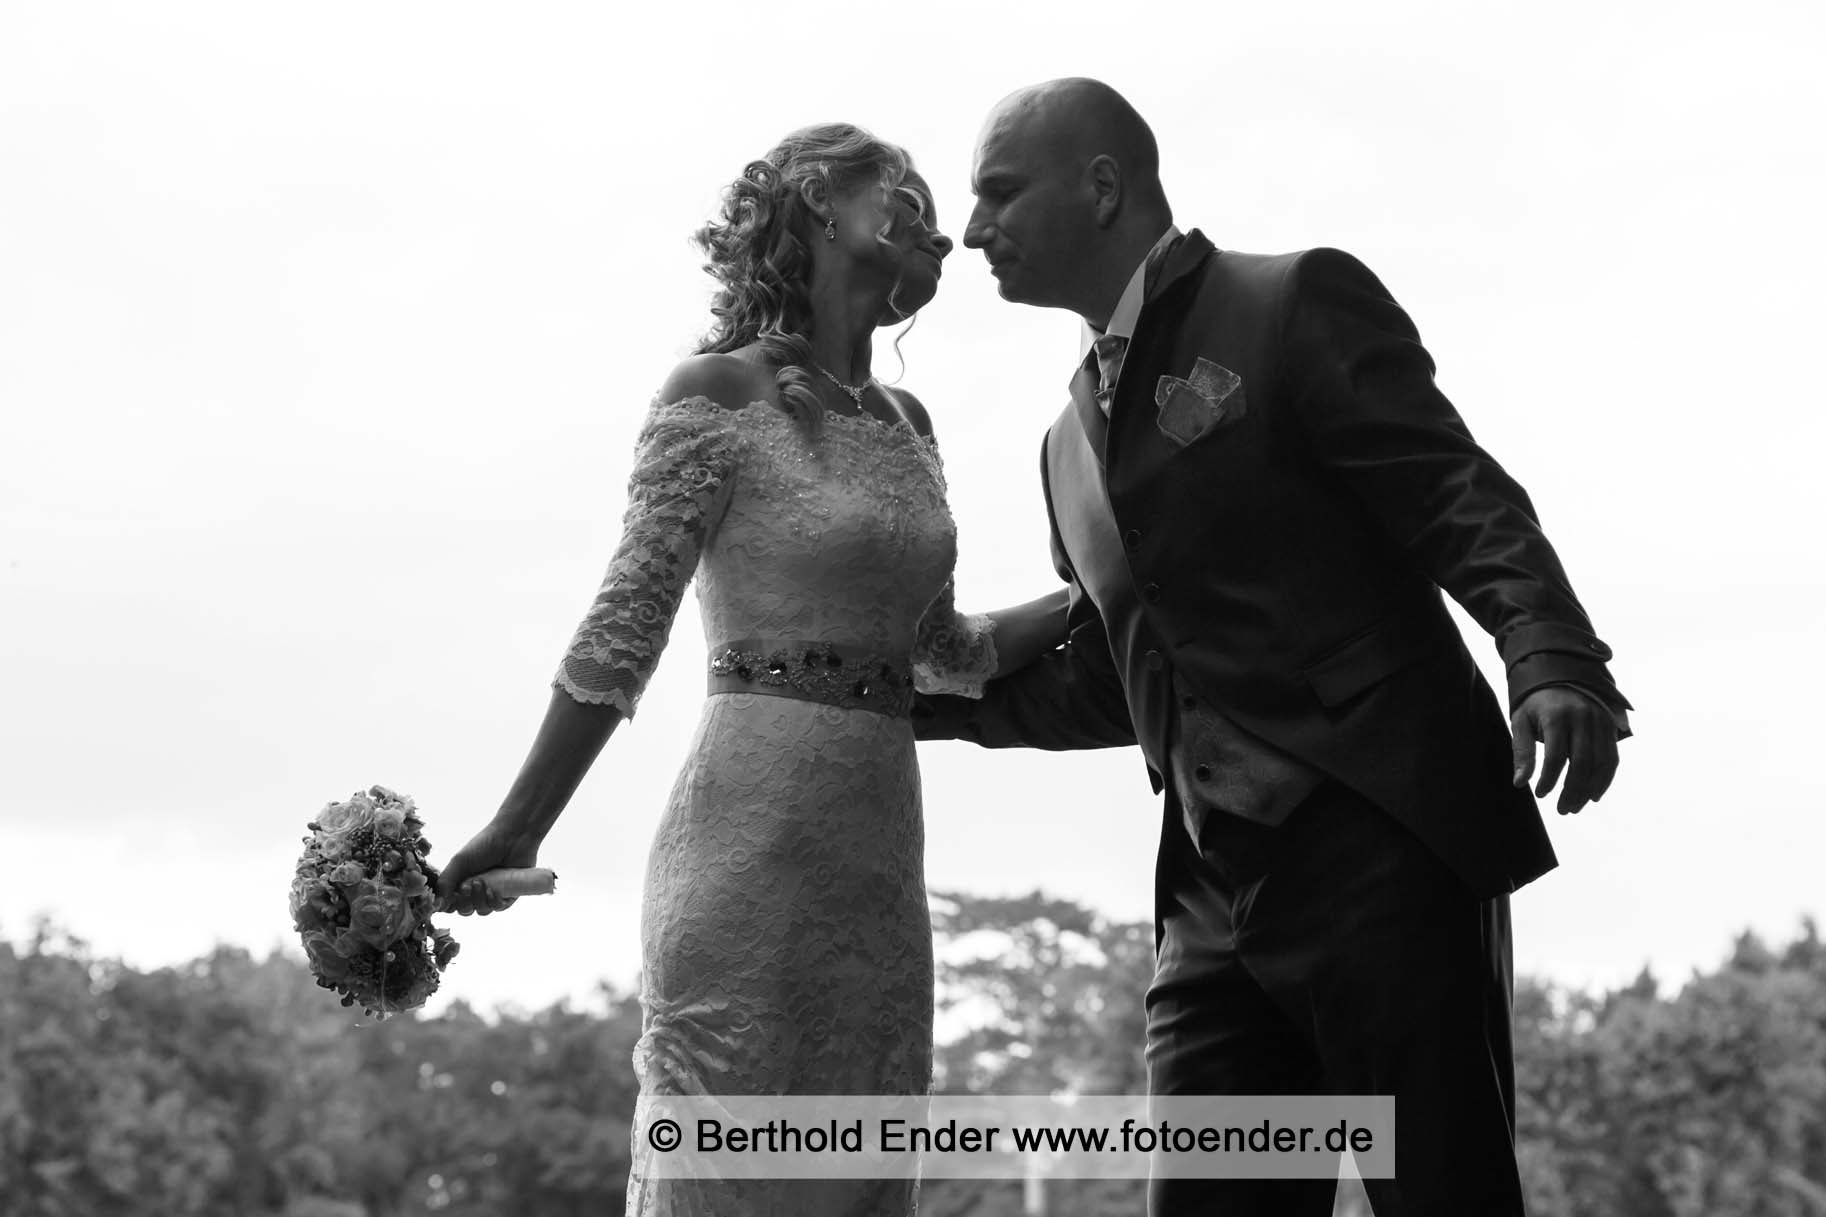 Hochzeitsfotografie im Wörlitzer Park - Fotostudio Berthold Ender